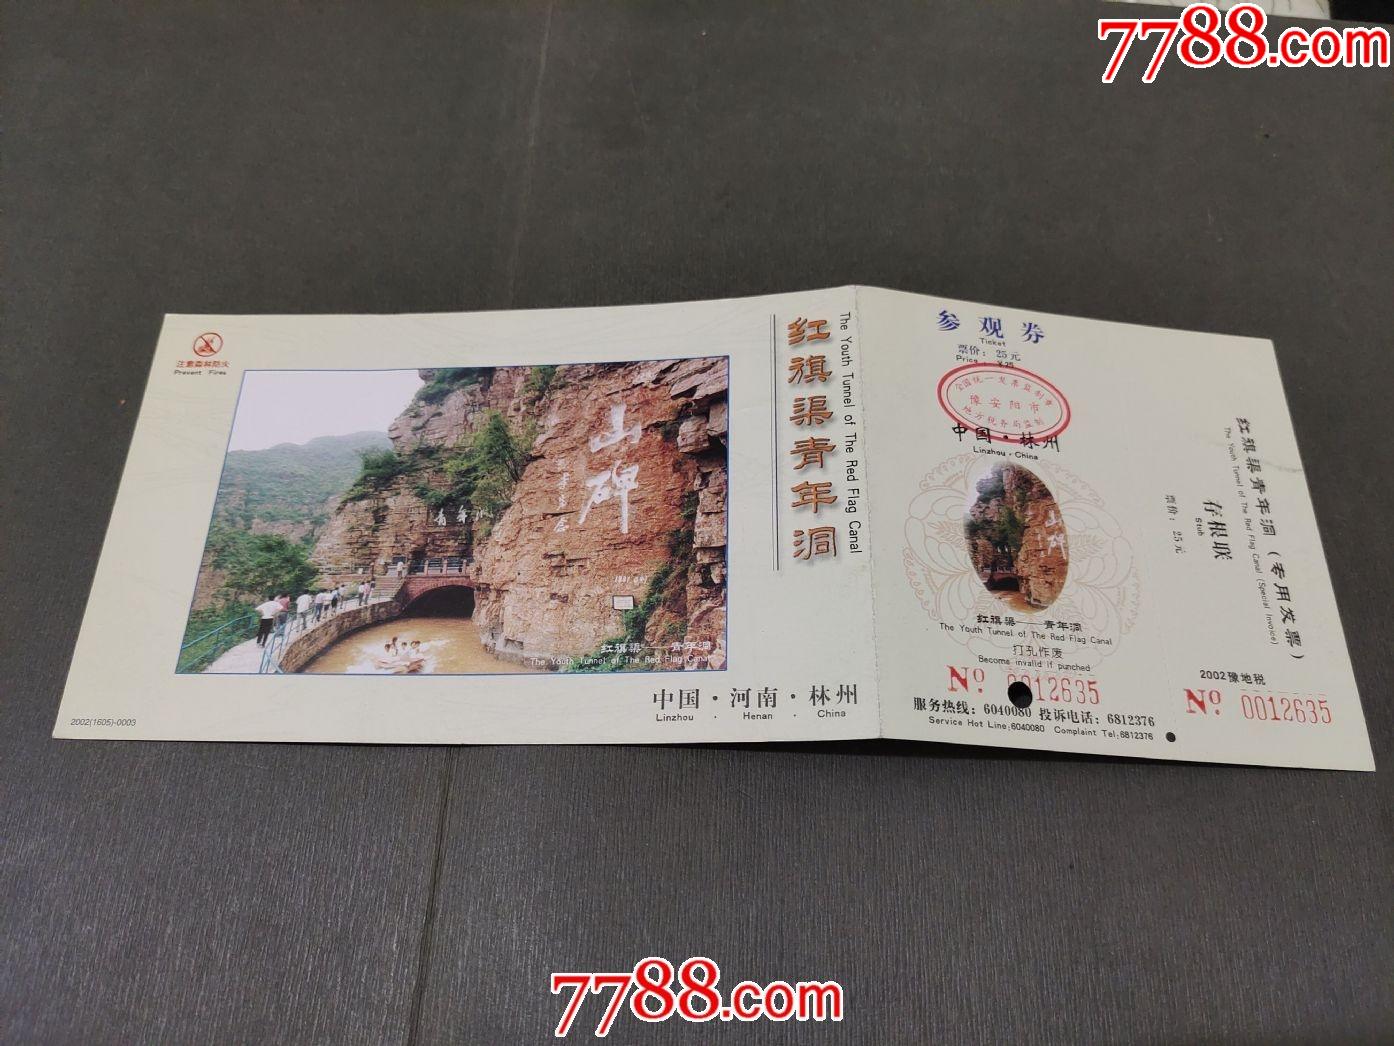 林州红旗渠风景区门票图片